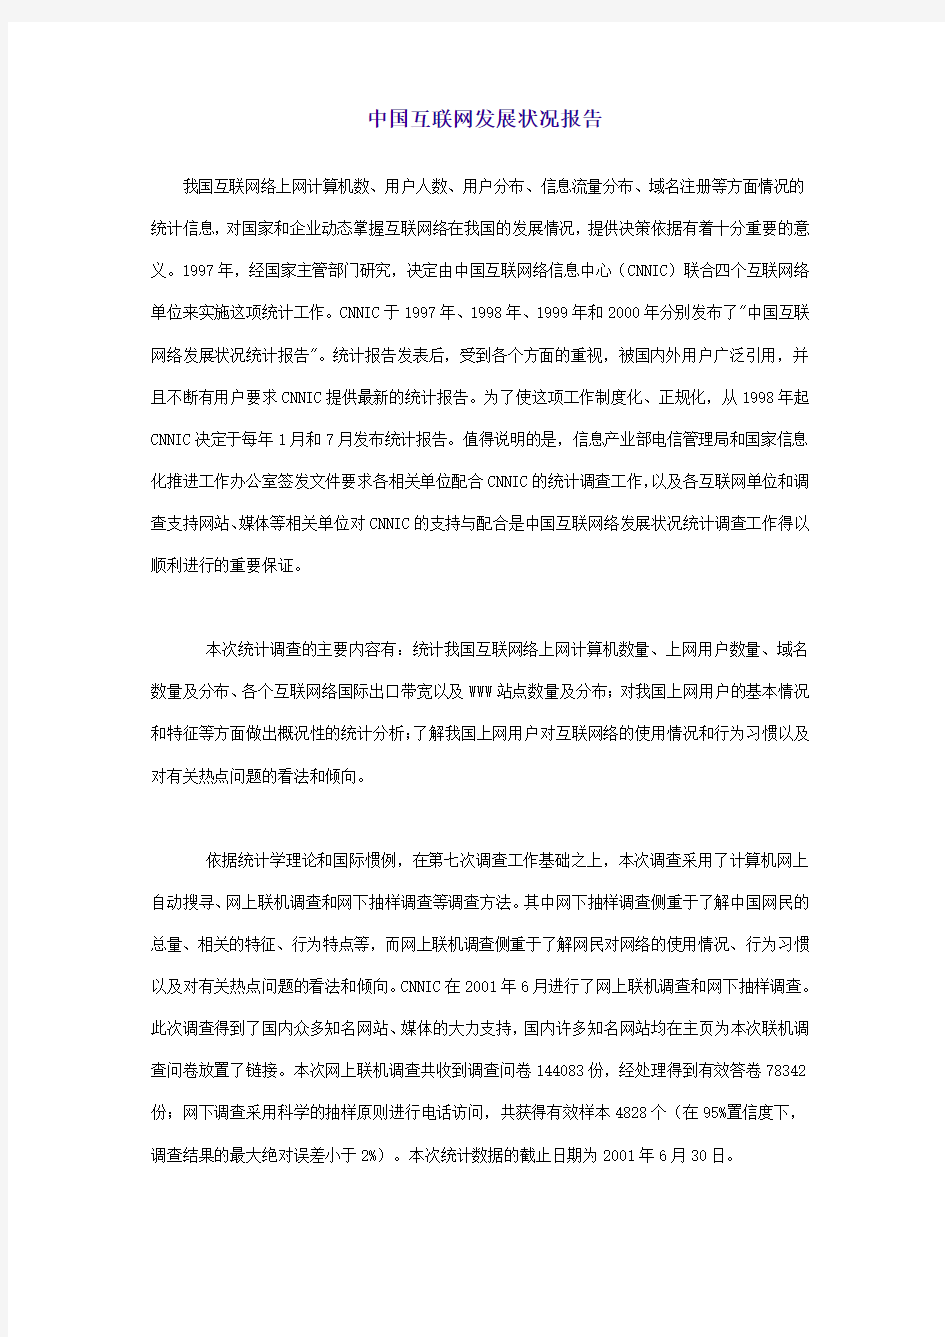 (发展战略)中国互联网发展状况报告